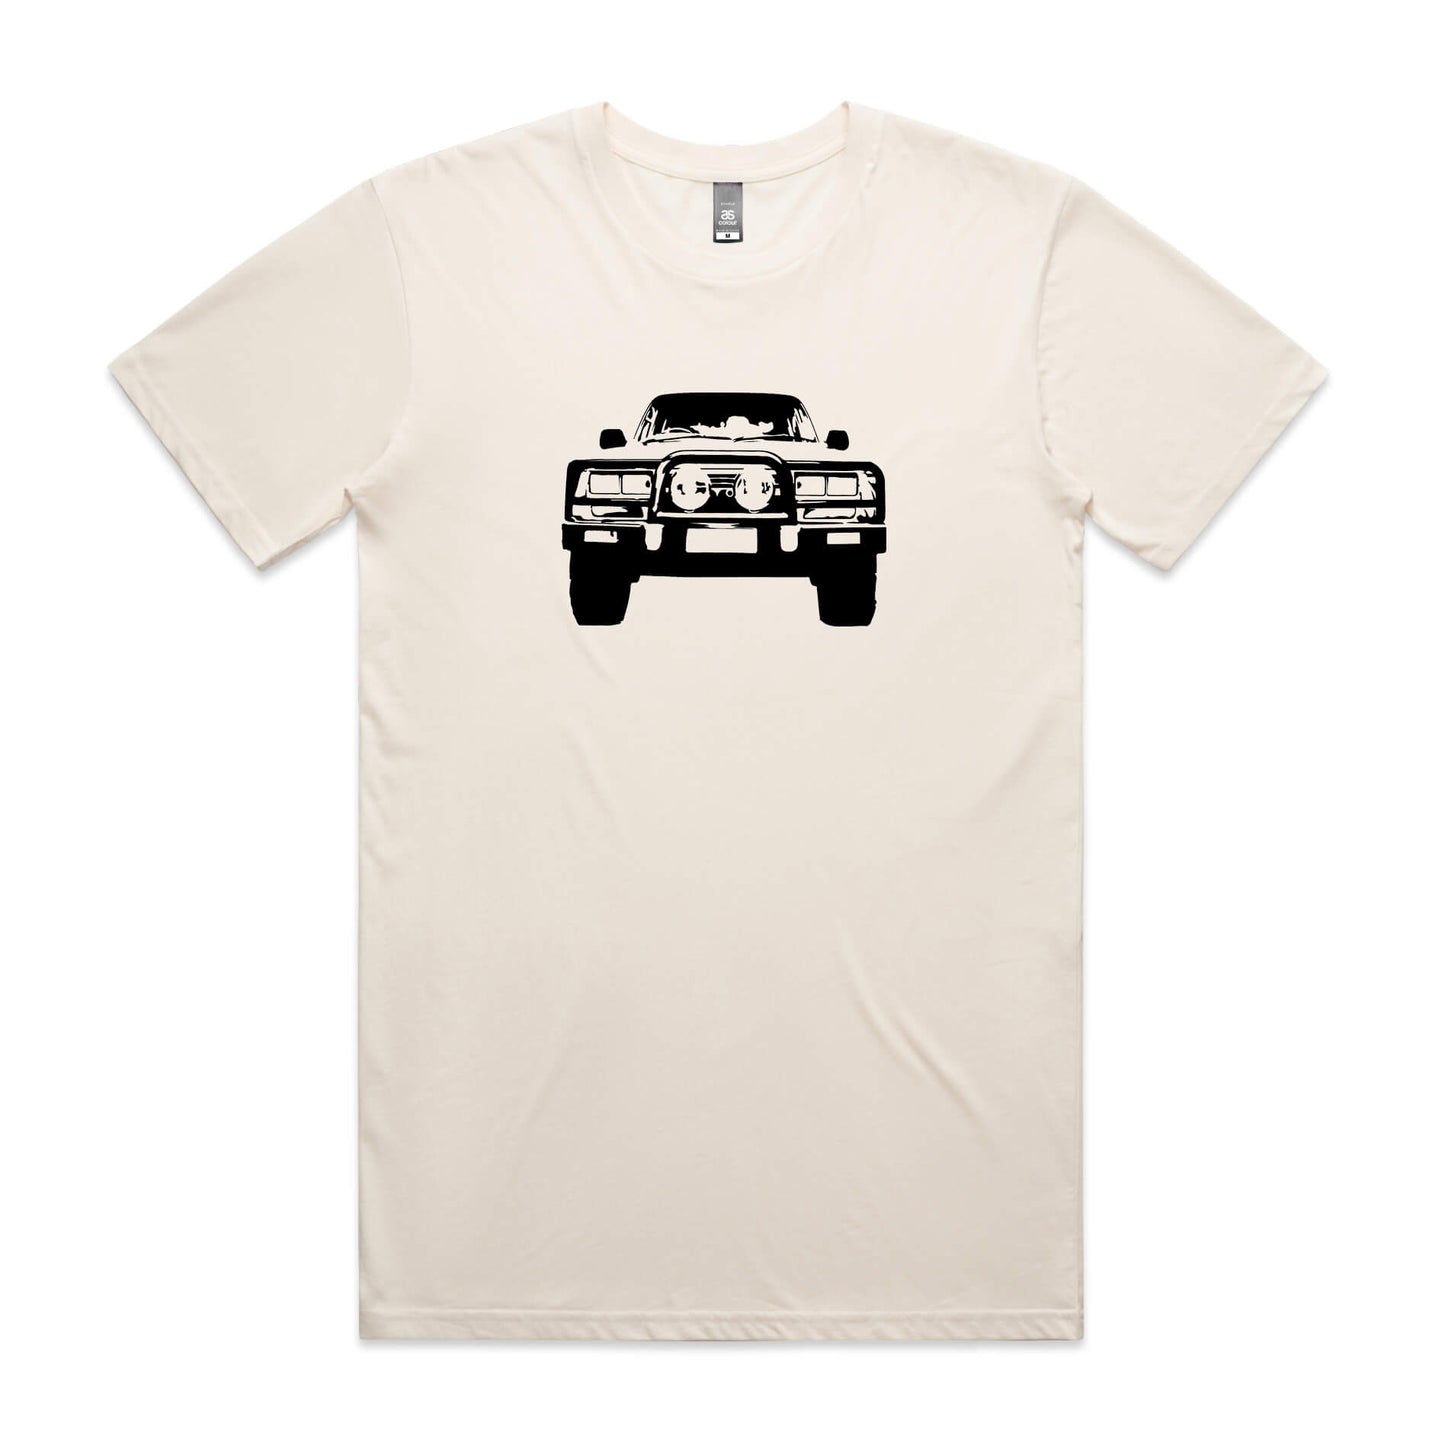 Toyota LandCruiser 80 Series t-shirt in beige